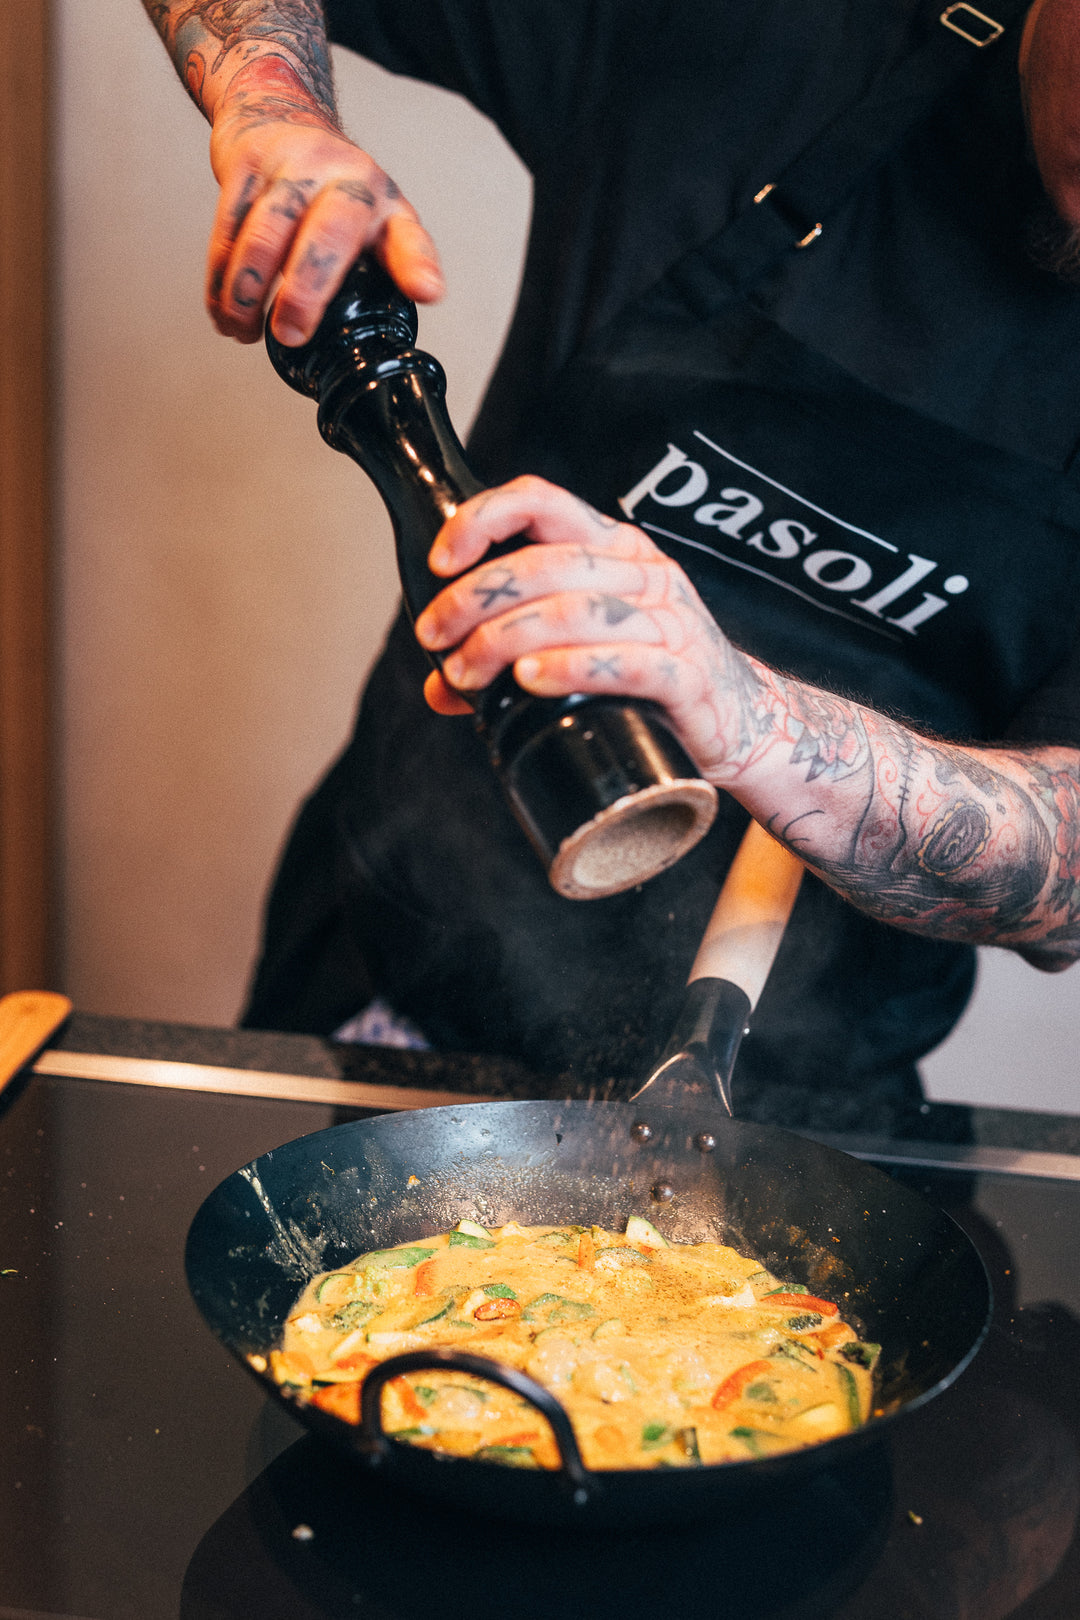 Nuestro chef profesional Mane utiliza un gran molinillo de pimienta para sazonar su deliciosa sartén de verduras en nuestro wok de pasoli.